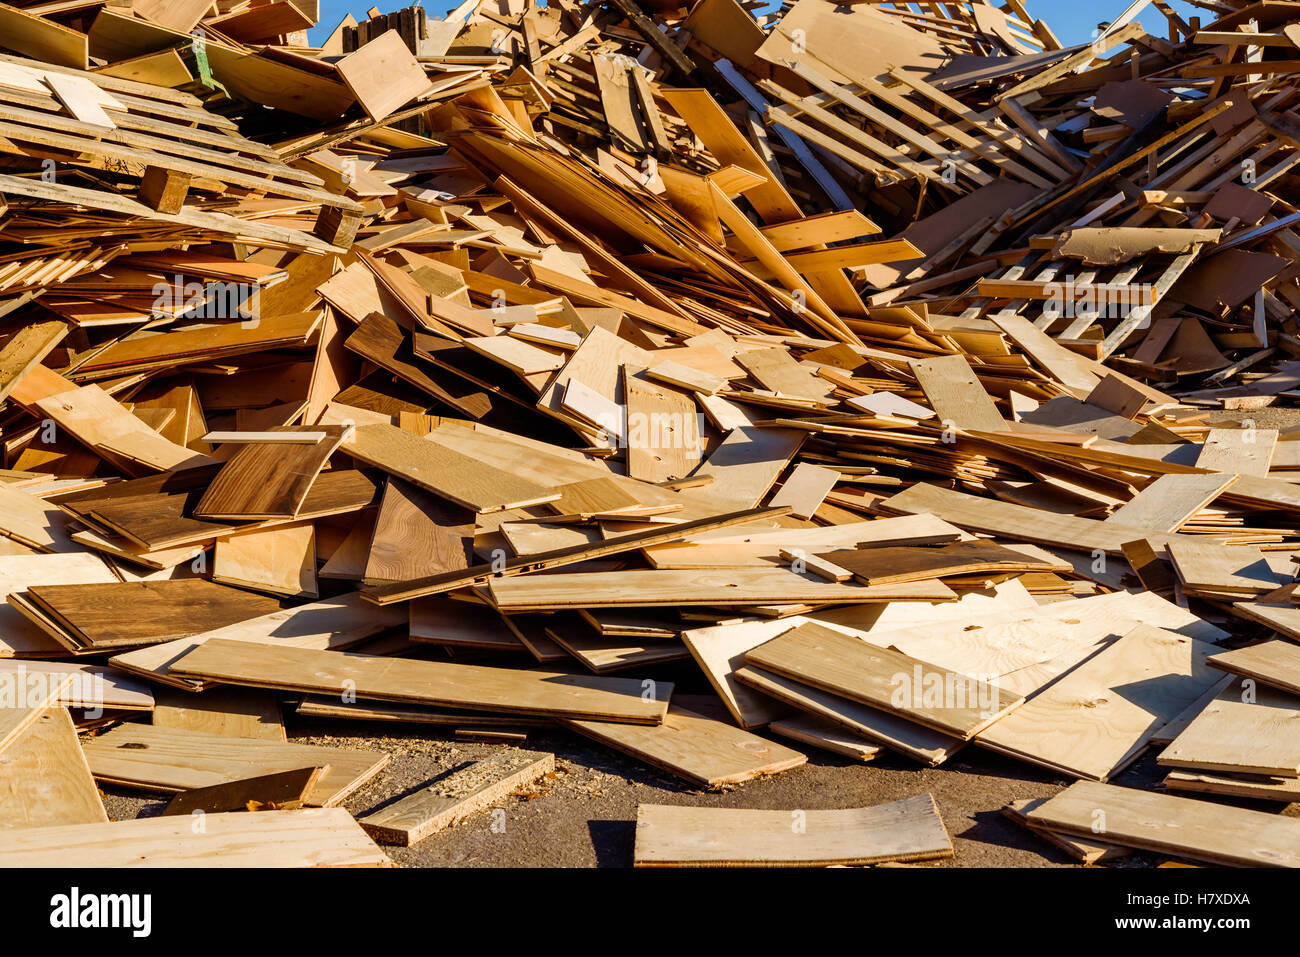 Pila di detriti di legno nella zona industriale. Il legno viene poi sminuzzato per essere usato come combustibile. Foto Stock